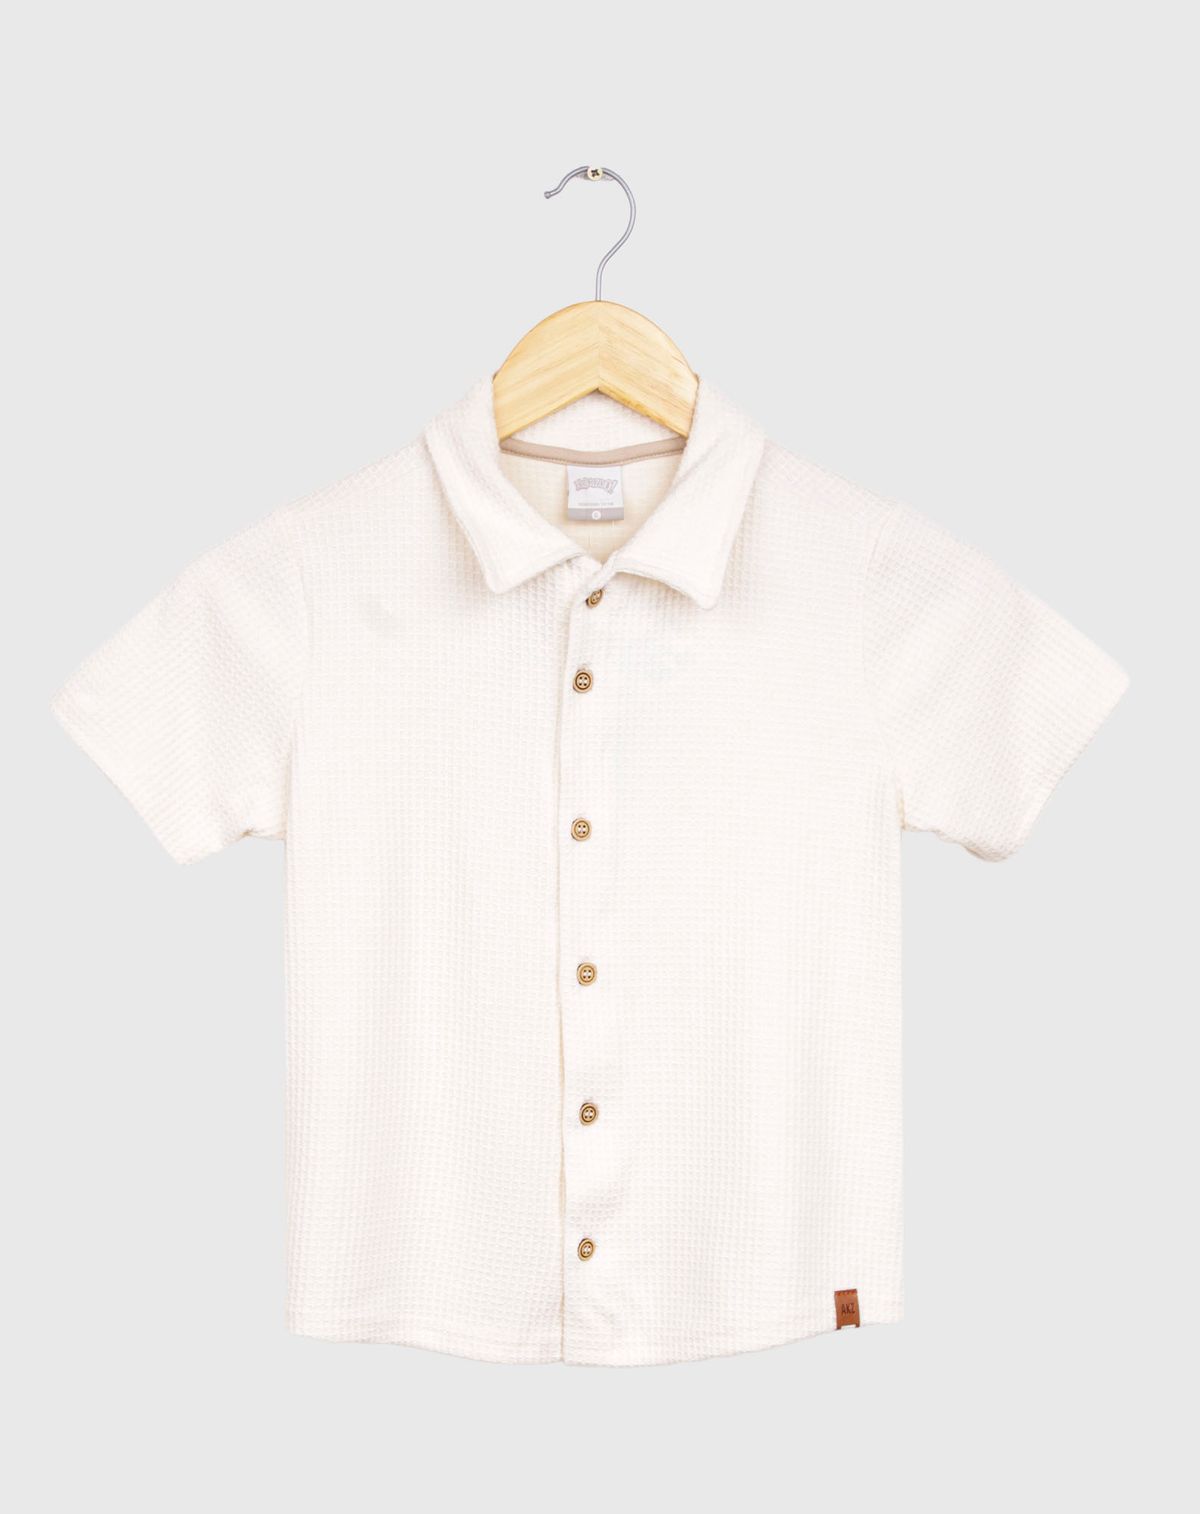 682316001-camisa-manga-curta-infantil-menino-texturizada---tam.-4-a-10-anos-off-white-4-2a0